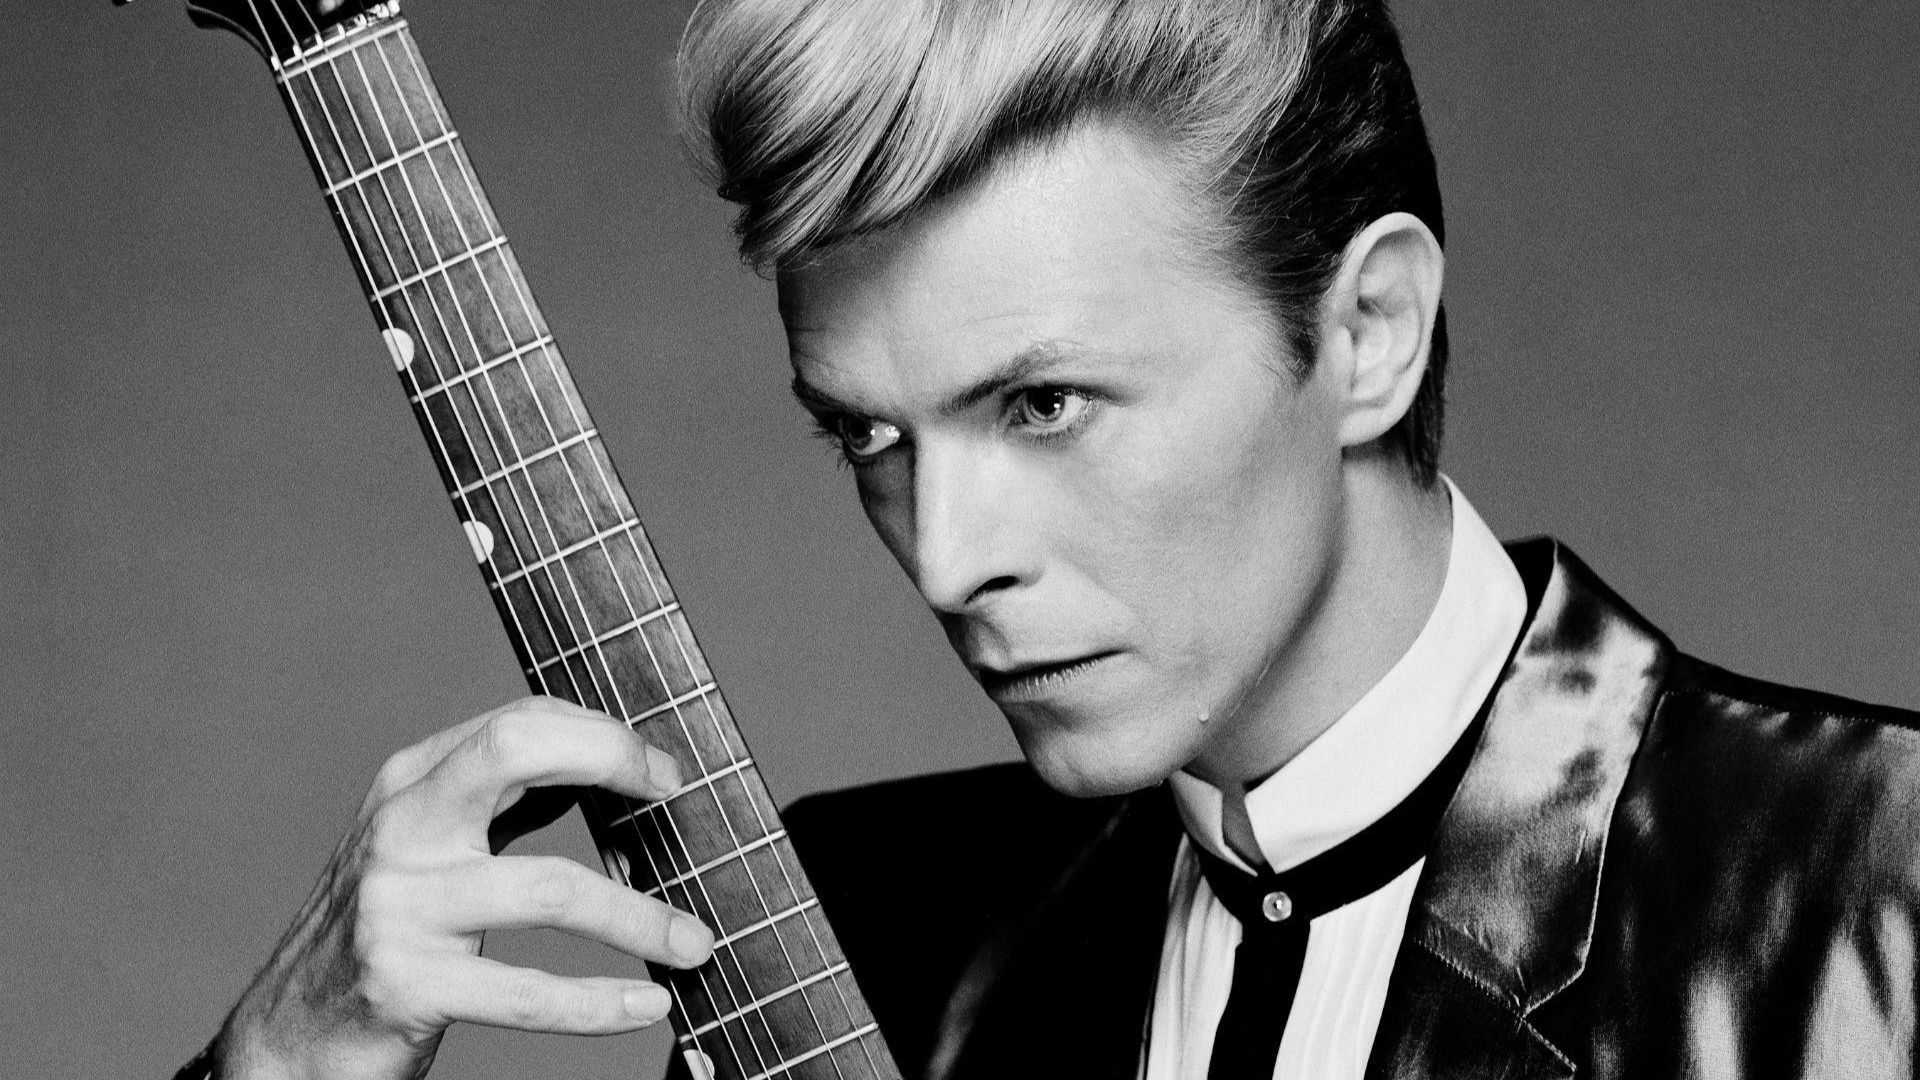 Publican nueva versión de la canción"Changes"de David Bowie